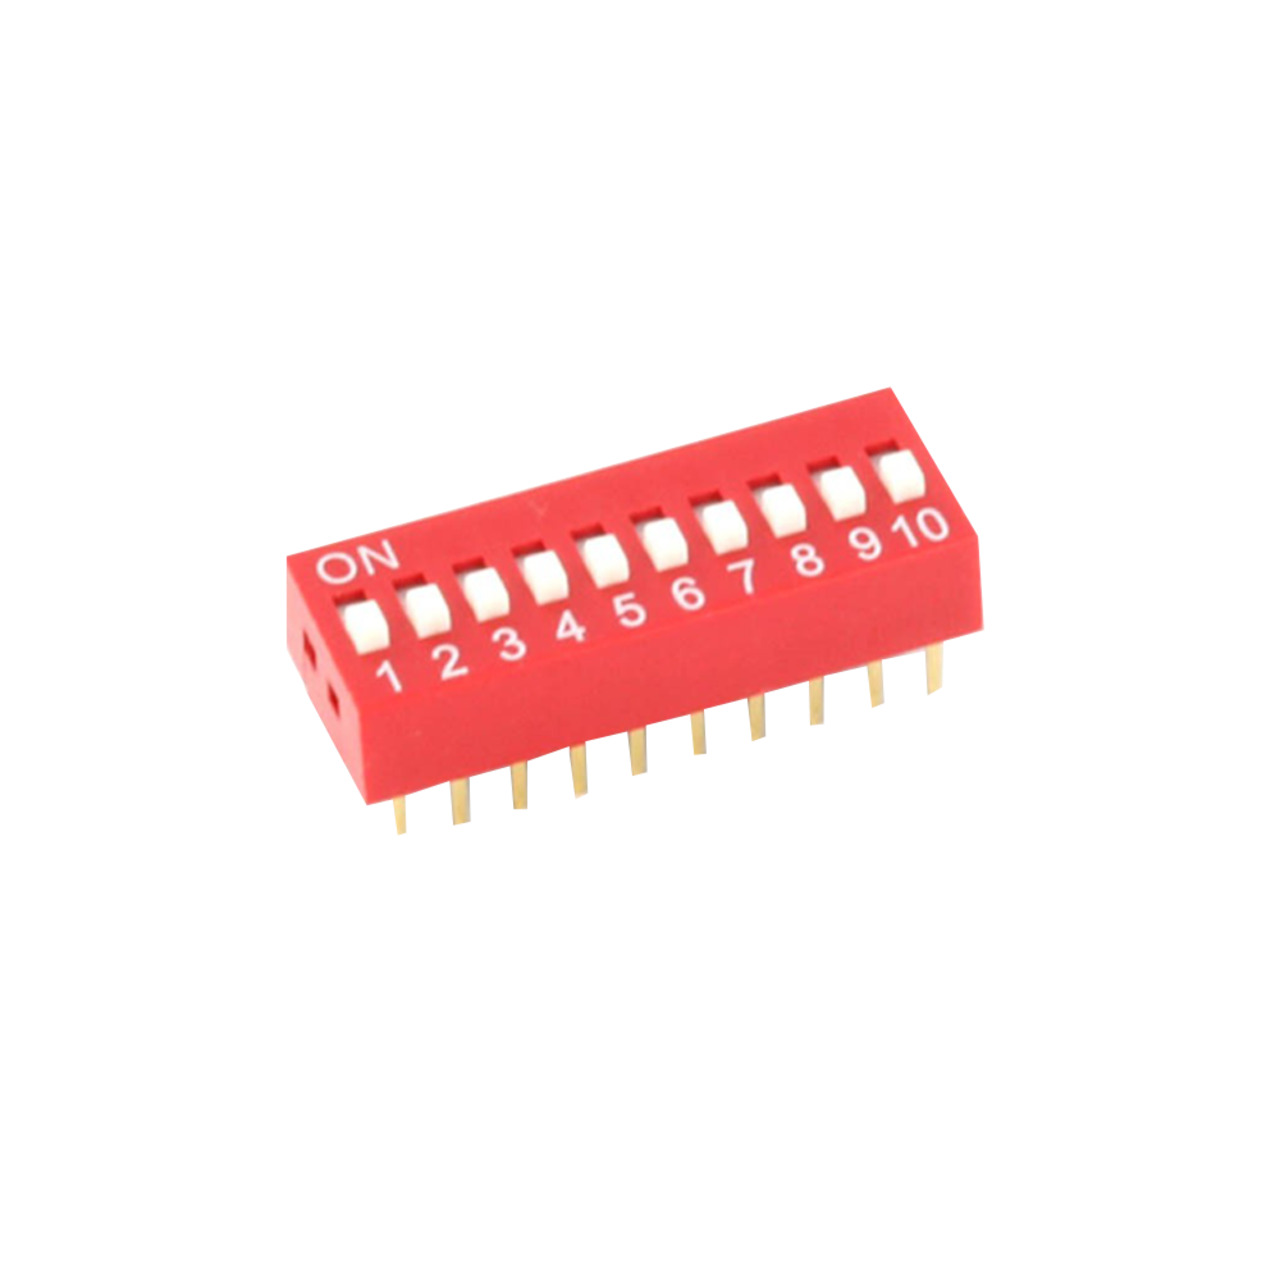 DIP-Schalter RM2-54 12-pol unter Komponenten